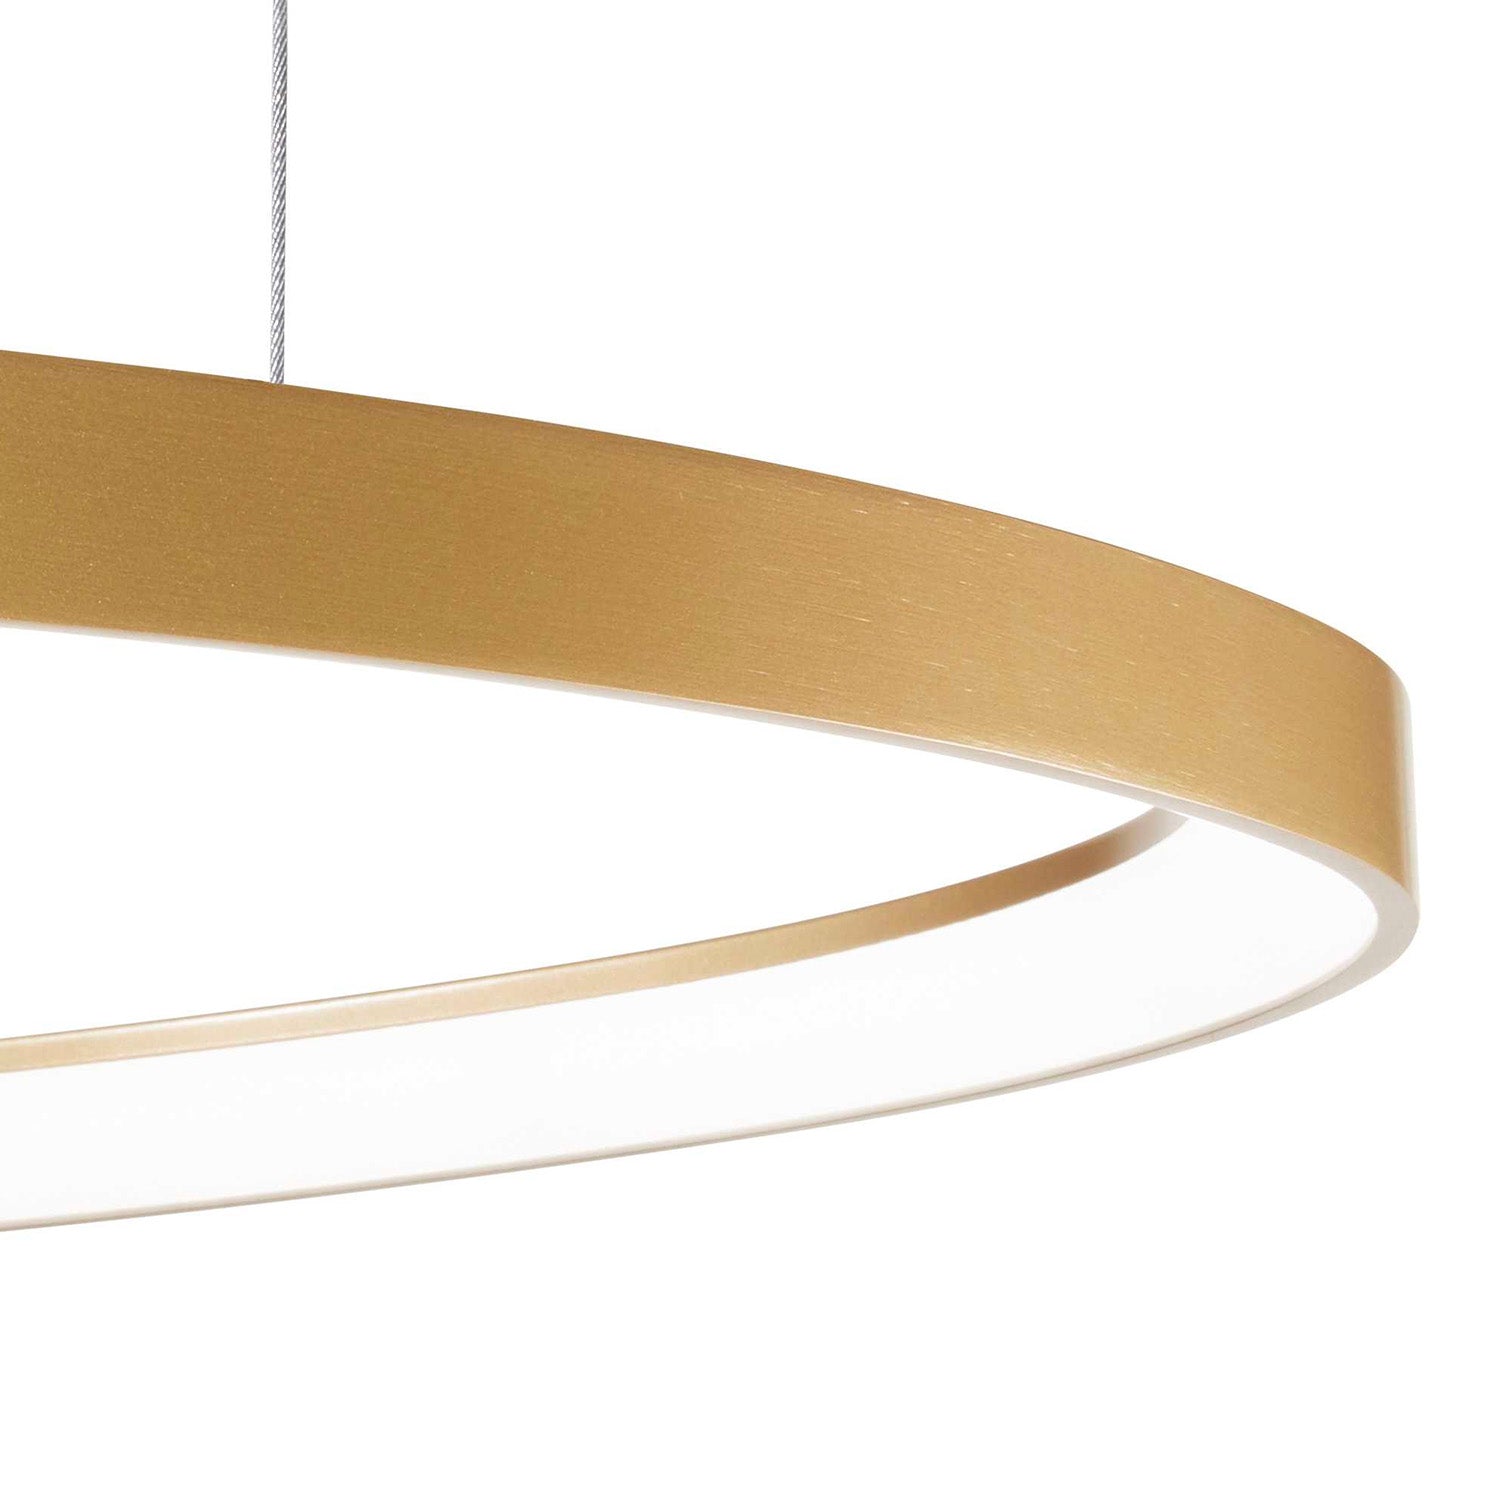 GEMINI – Integrierte ovale LED-Pendelleuchte in Gold, Schwarz oder Weißaluminium